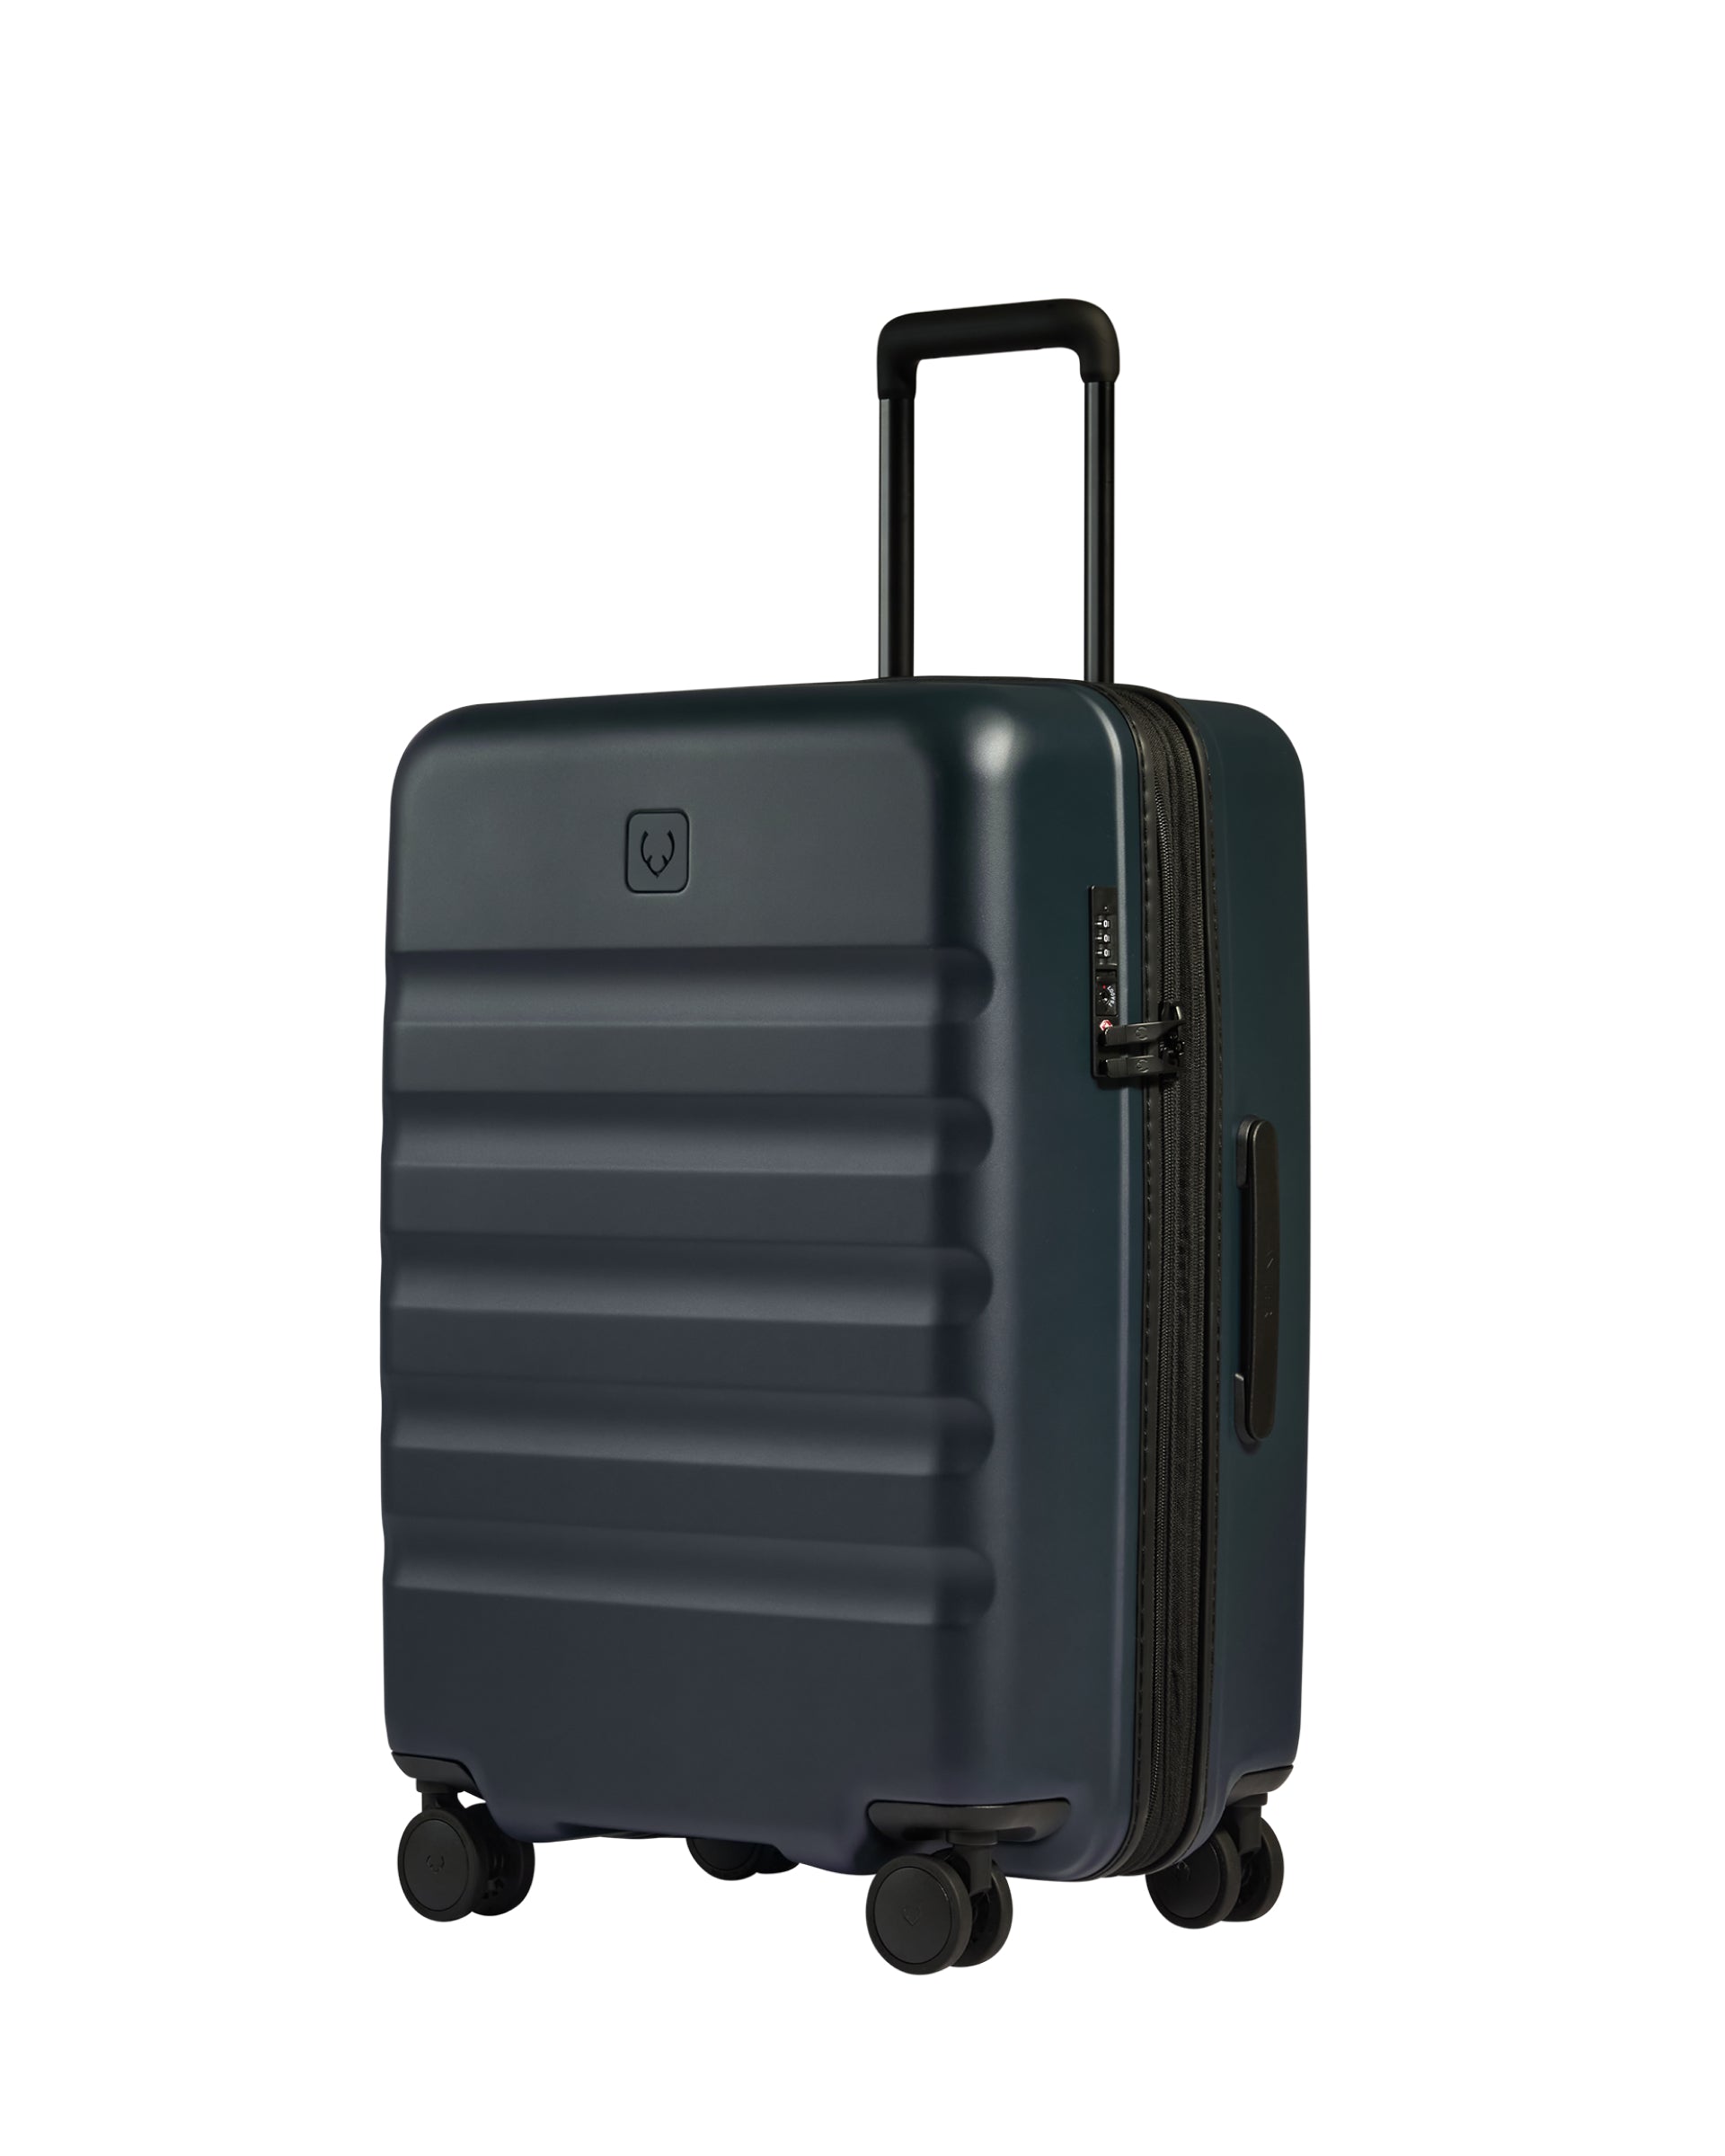 View Antler Icon Stripe Medium Suitcase In Navy Indigo Blue Size 455cm x 66cm x 30cm information